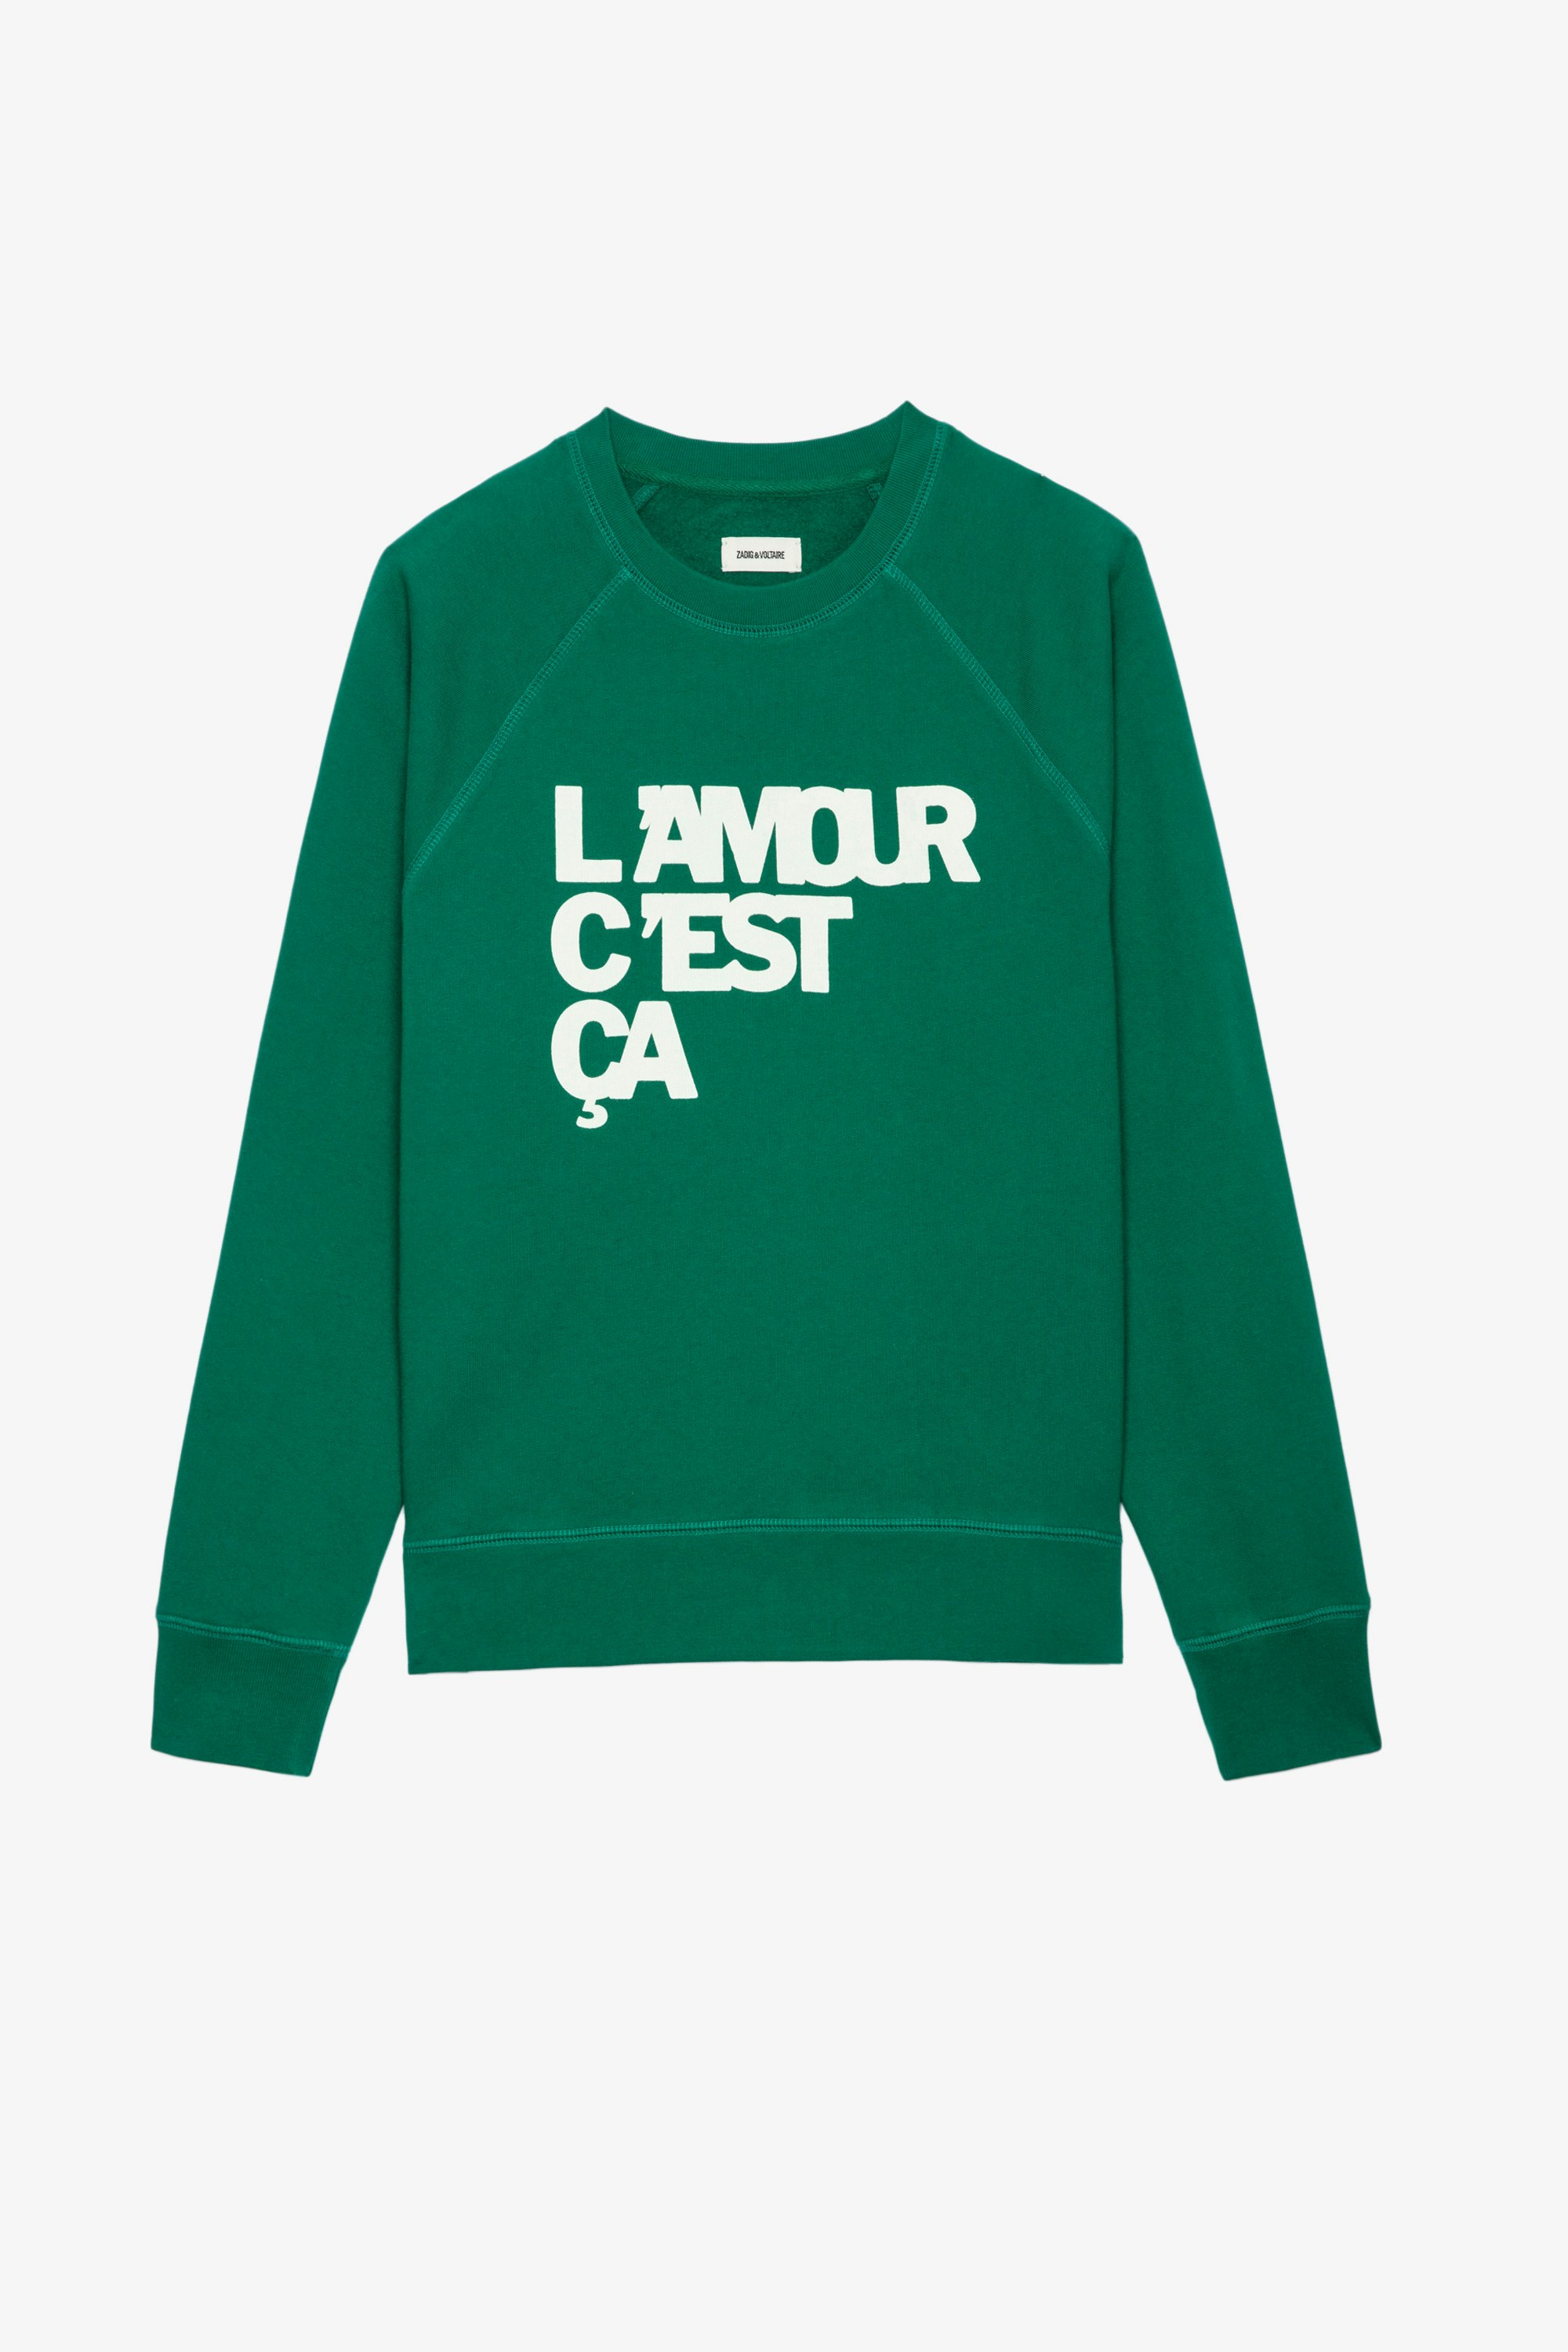 Upper L'amour c'est ça スウェット Women’s green cotton sweatshirt with “L'amour c'est ça” slogan